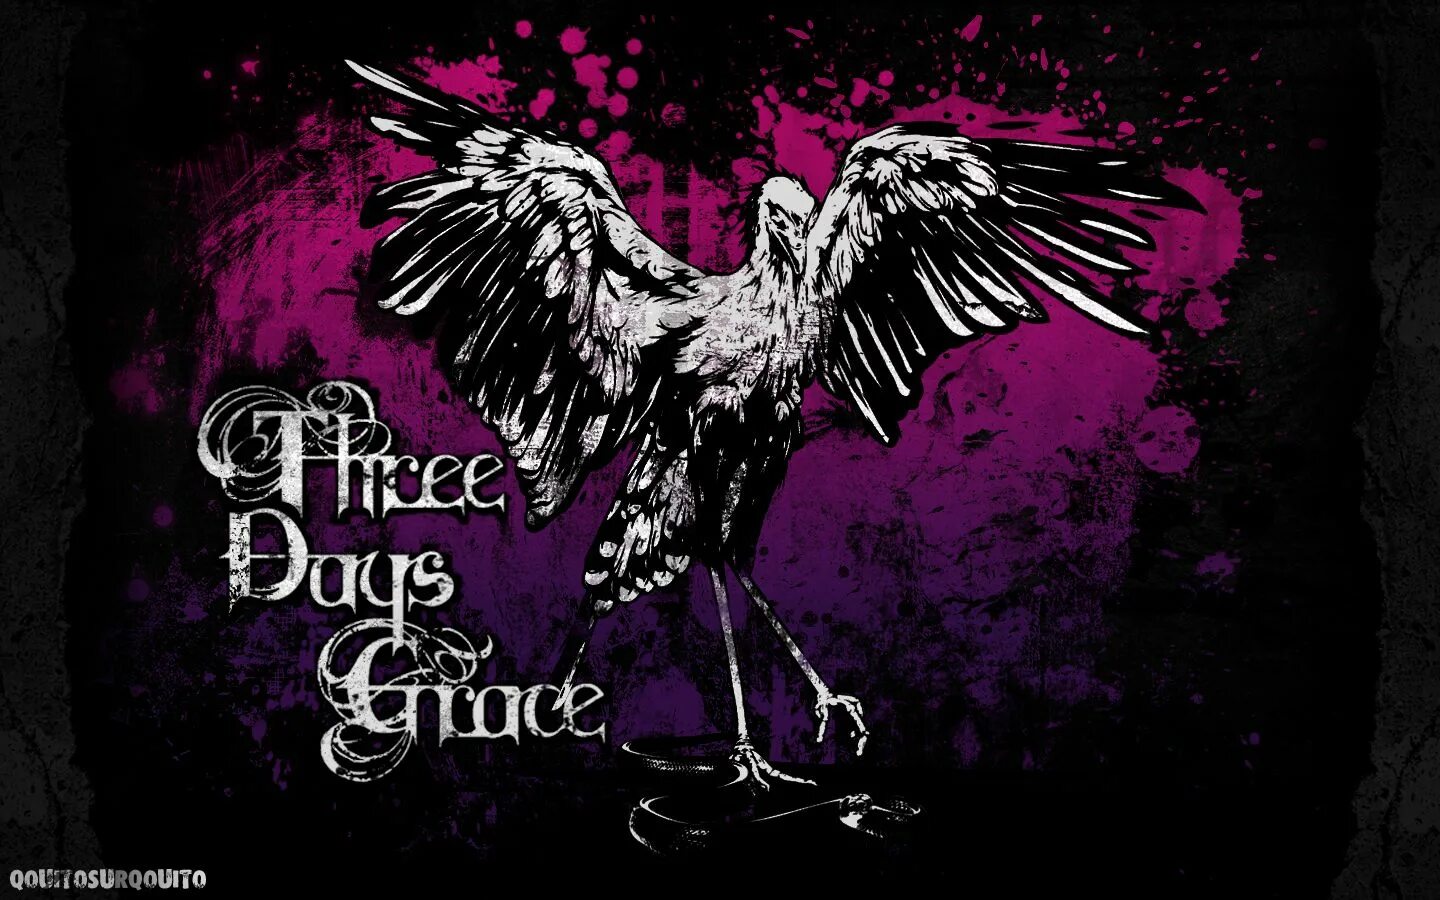 Три Дэйс Грэйс. Три дейс Грейс альбомы. Three Days Grace обложки альбомов. Three Days Grace обложка. Альбомы three